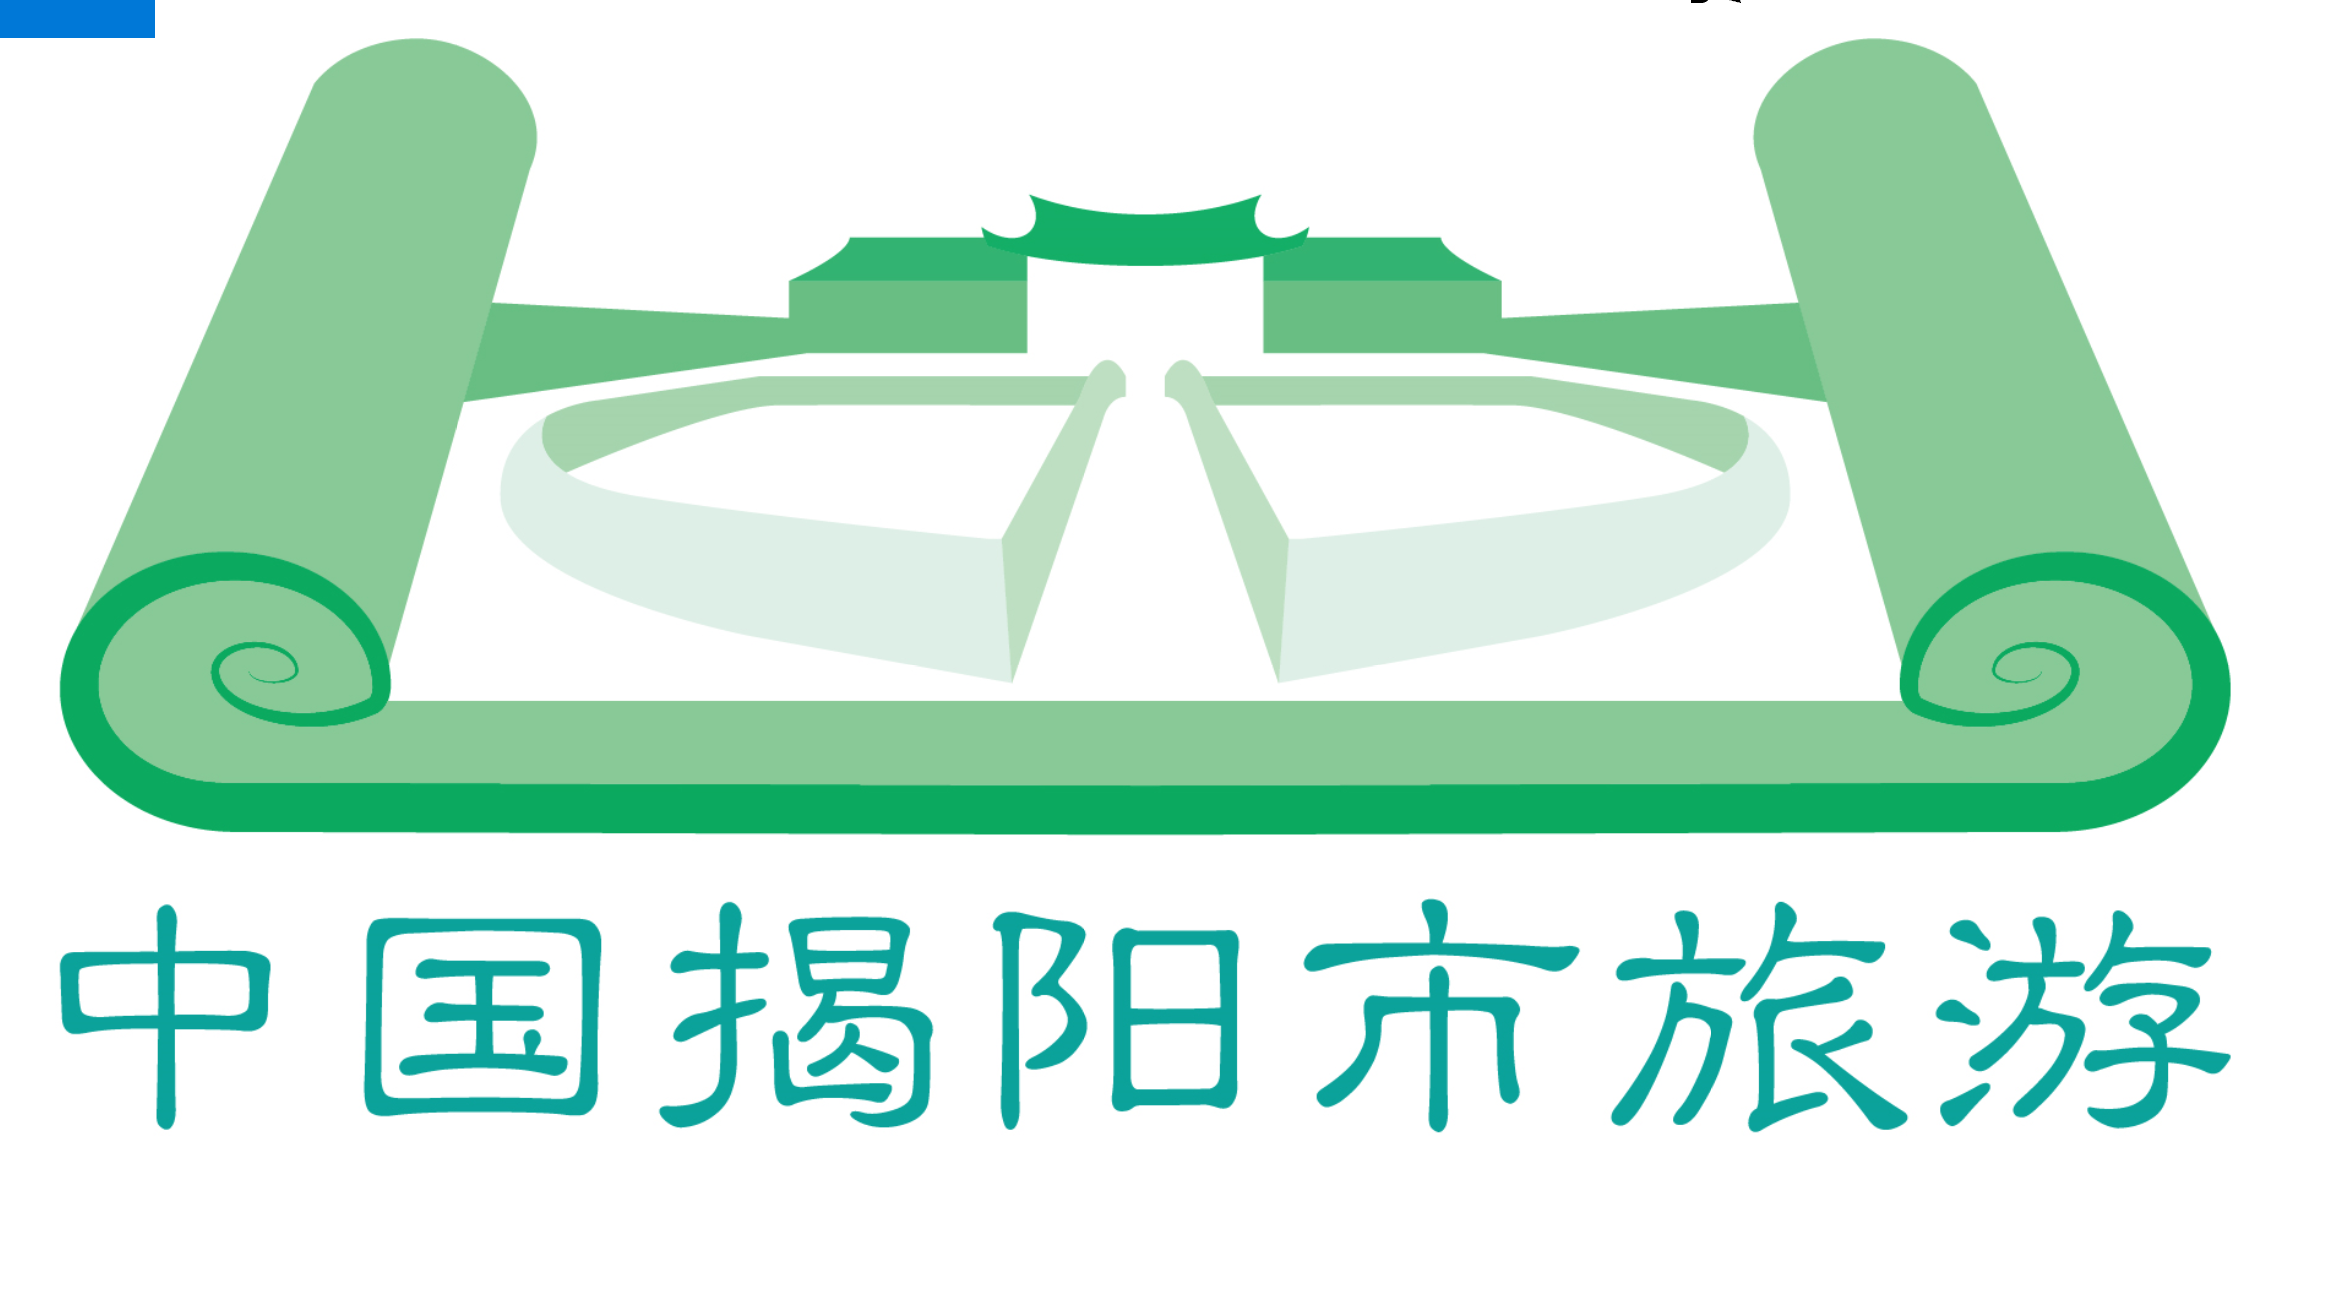 揭阳楼logo图片